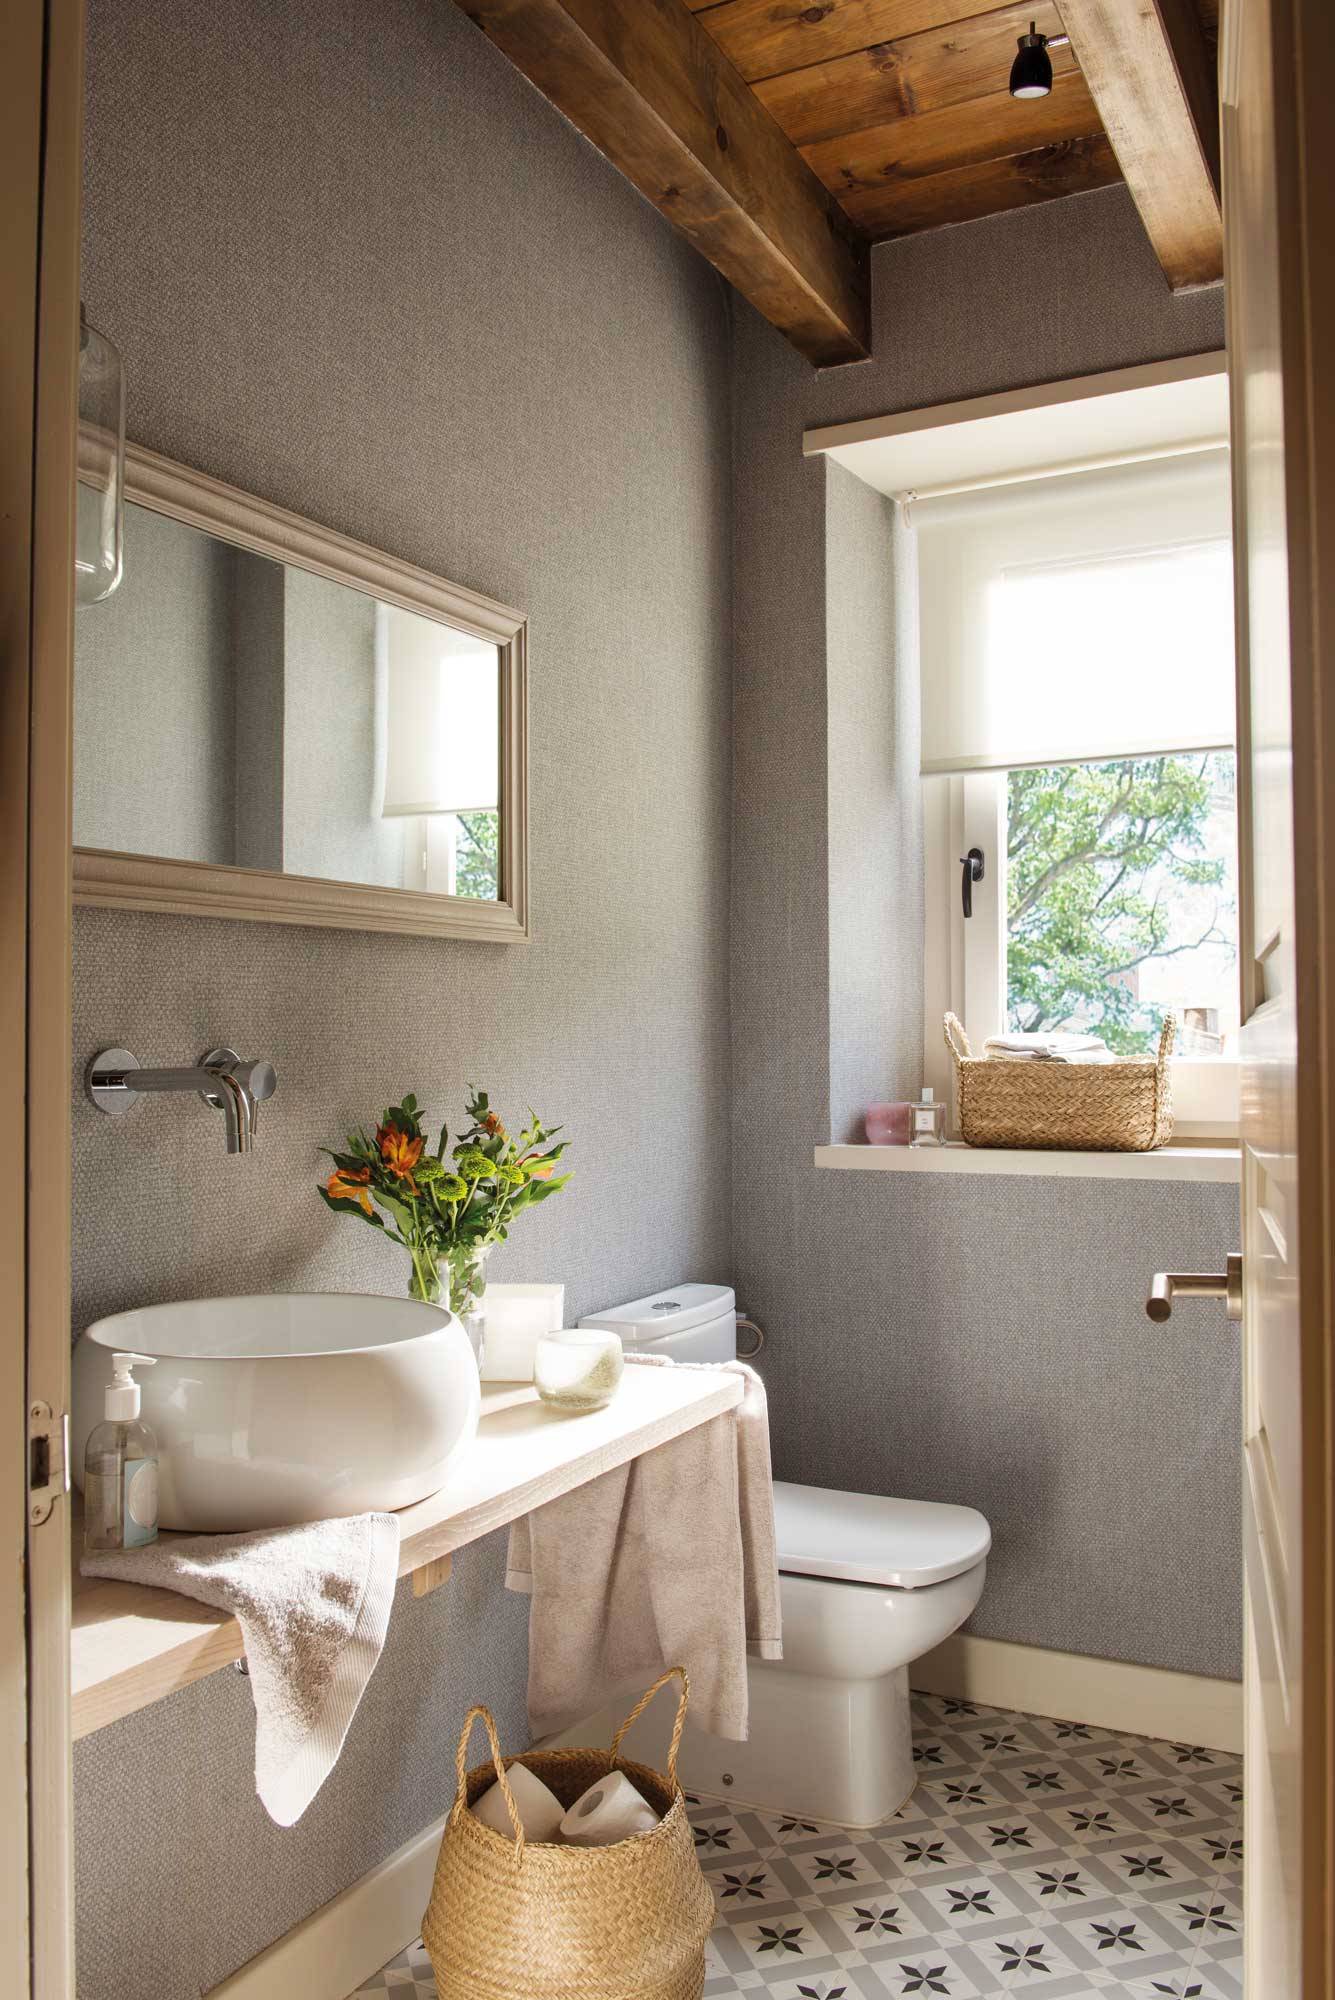 Baño pequeño reformado en gris con baldosas hidráulicas y vigas en el techo. 